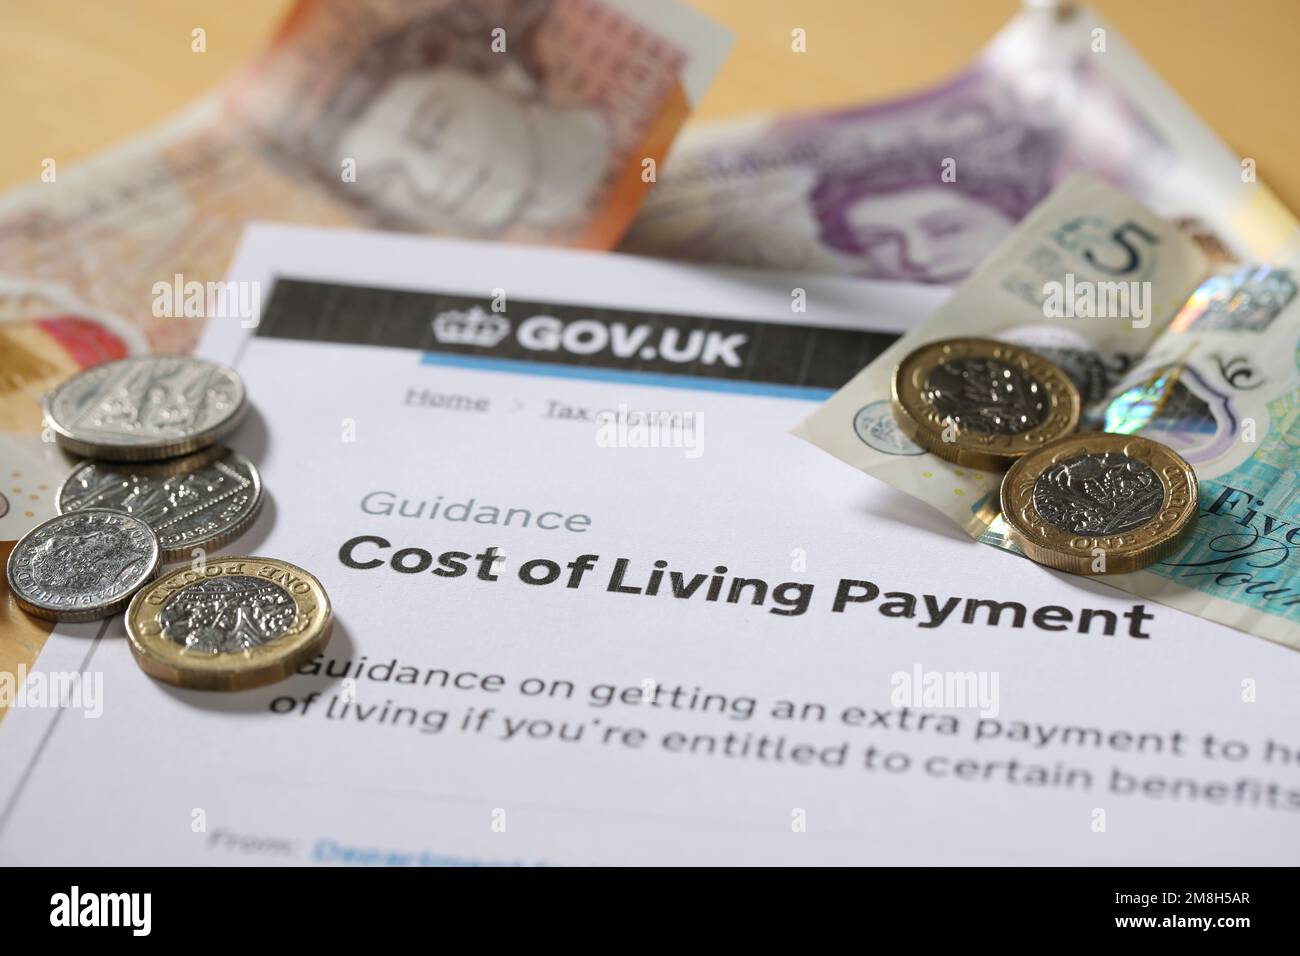 Costo della crisi vivente nel Regno Unito. Il governo britannico ha pagato il costo della vita per sostenere le persone con determinati benifit o crediti d'imposta. Foto Stock